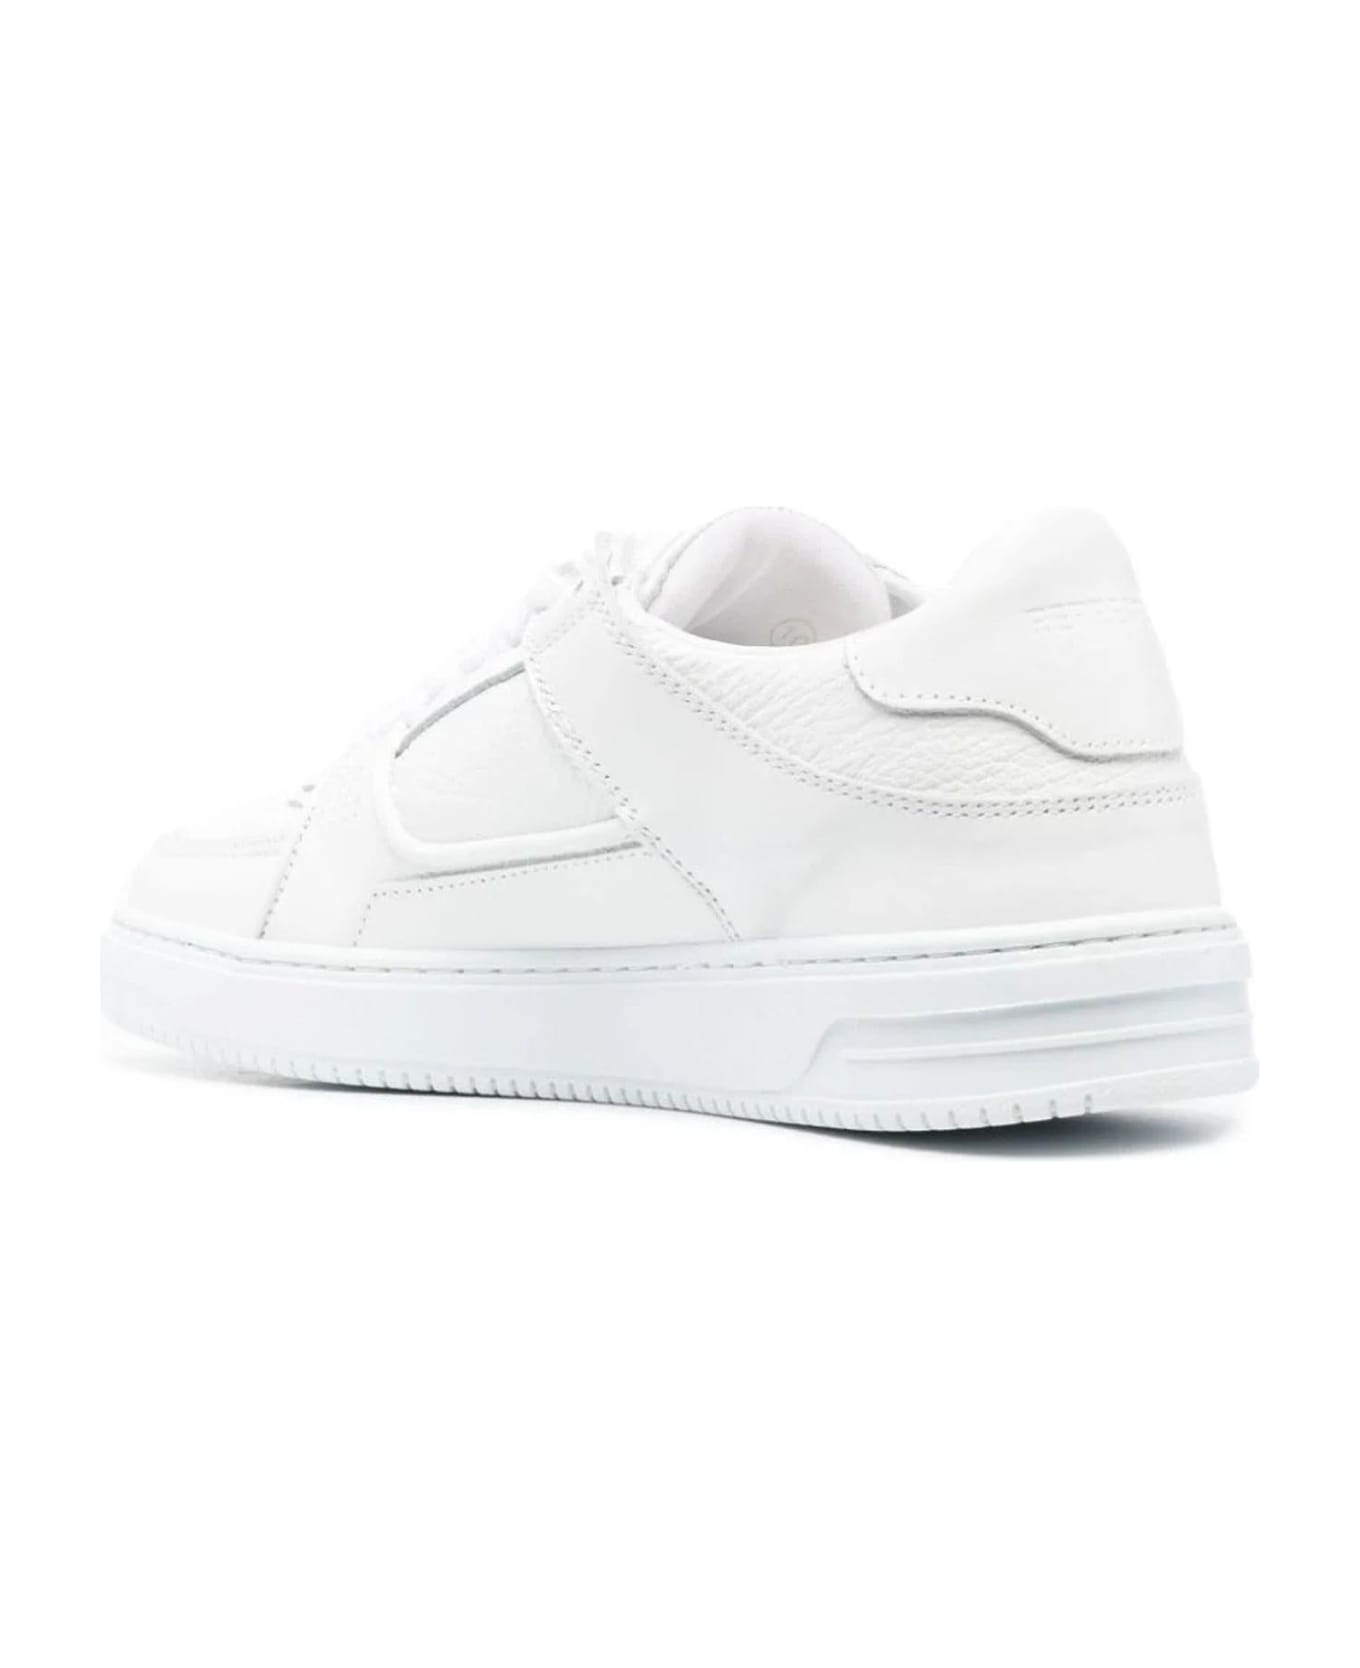 REPRESENT White Calf Leather Apex Sneakers